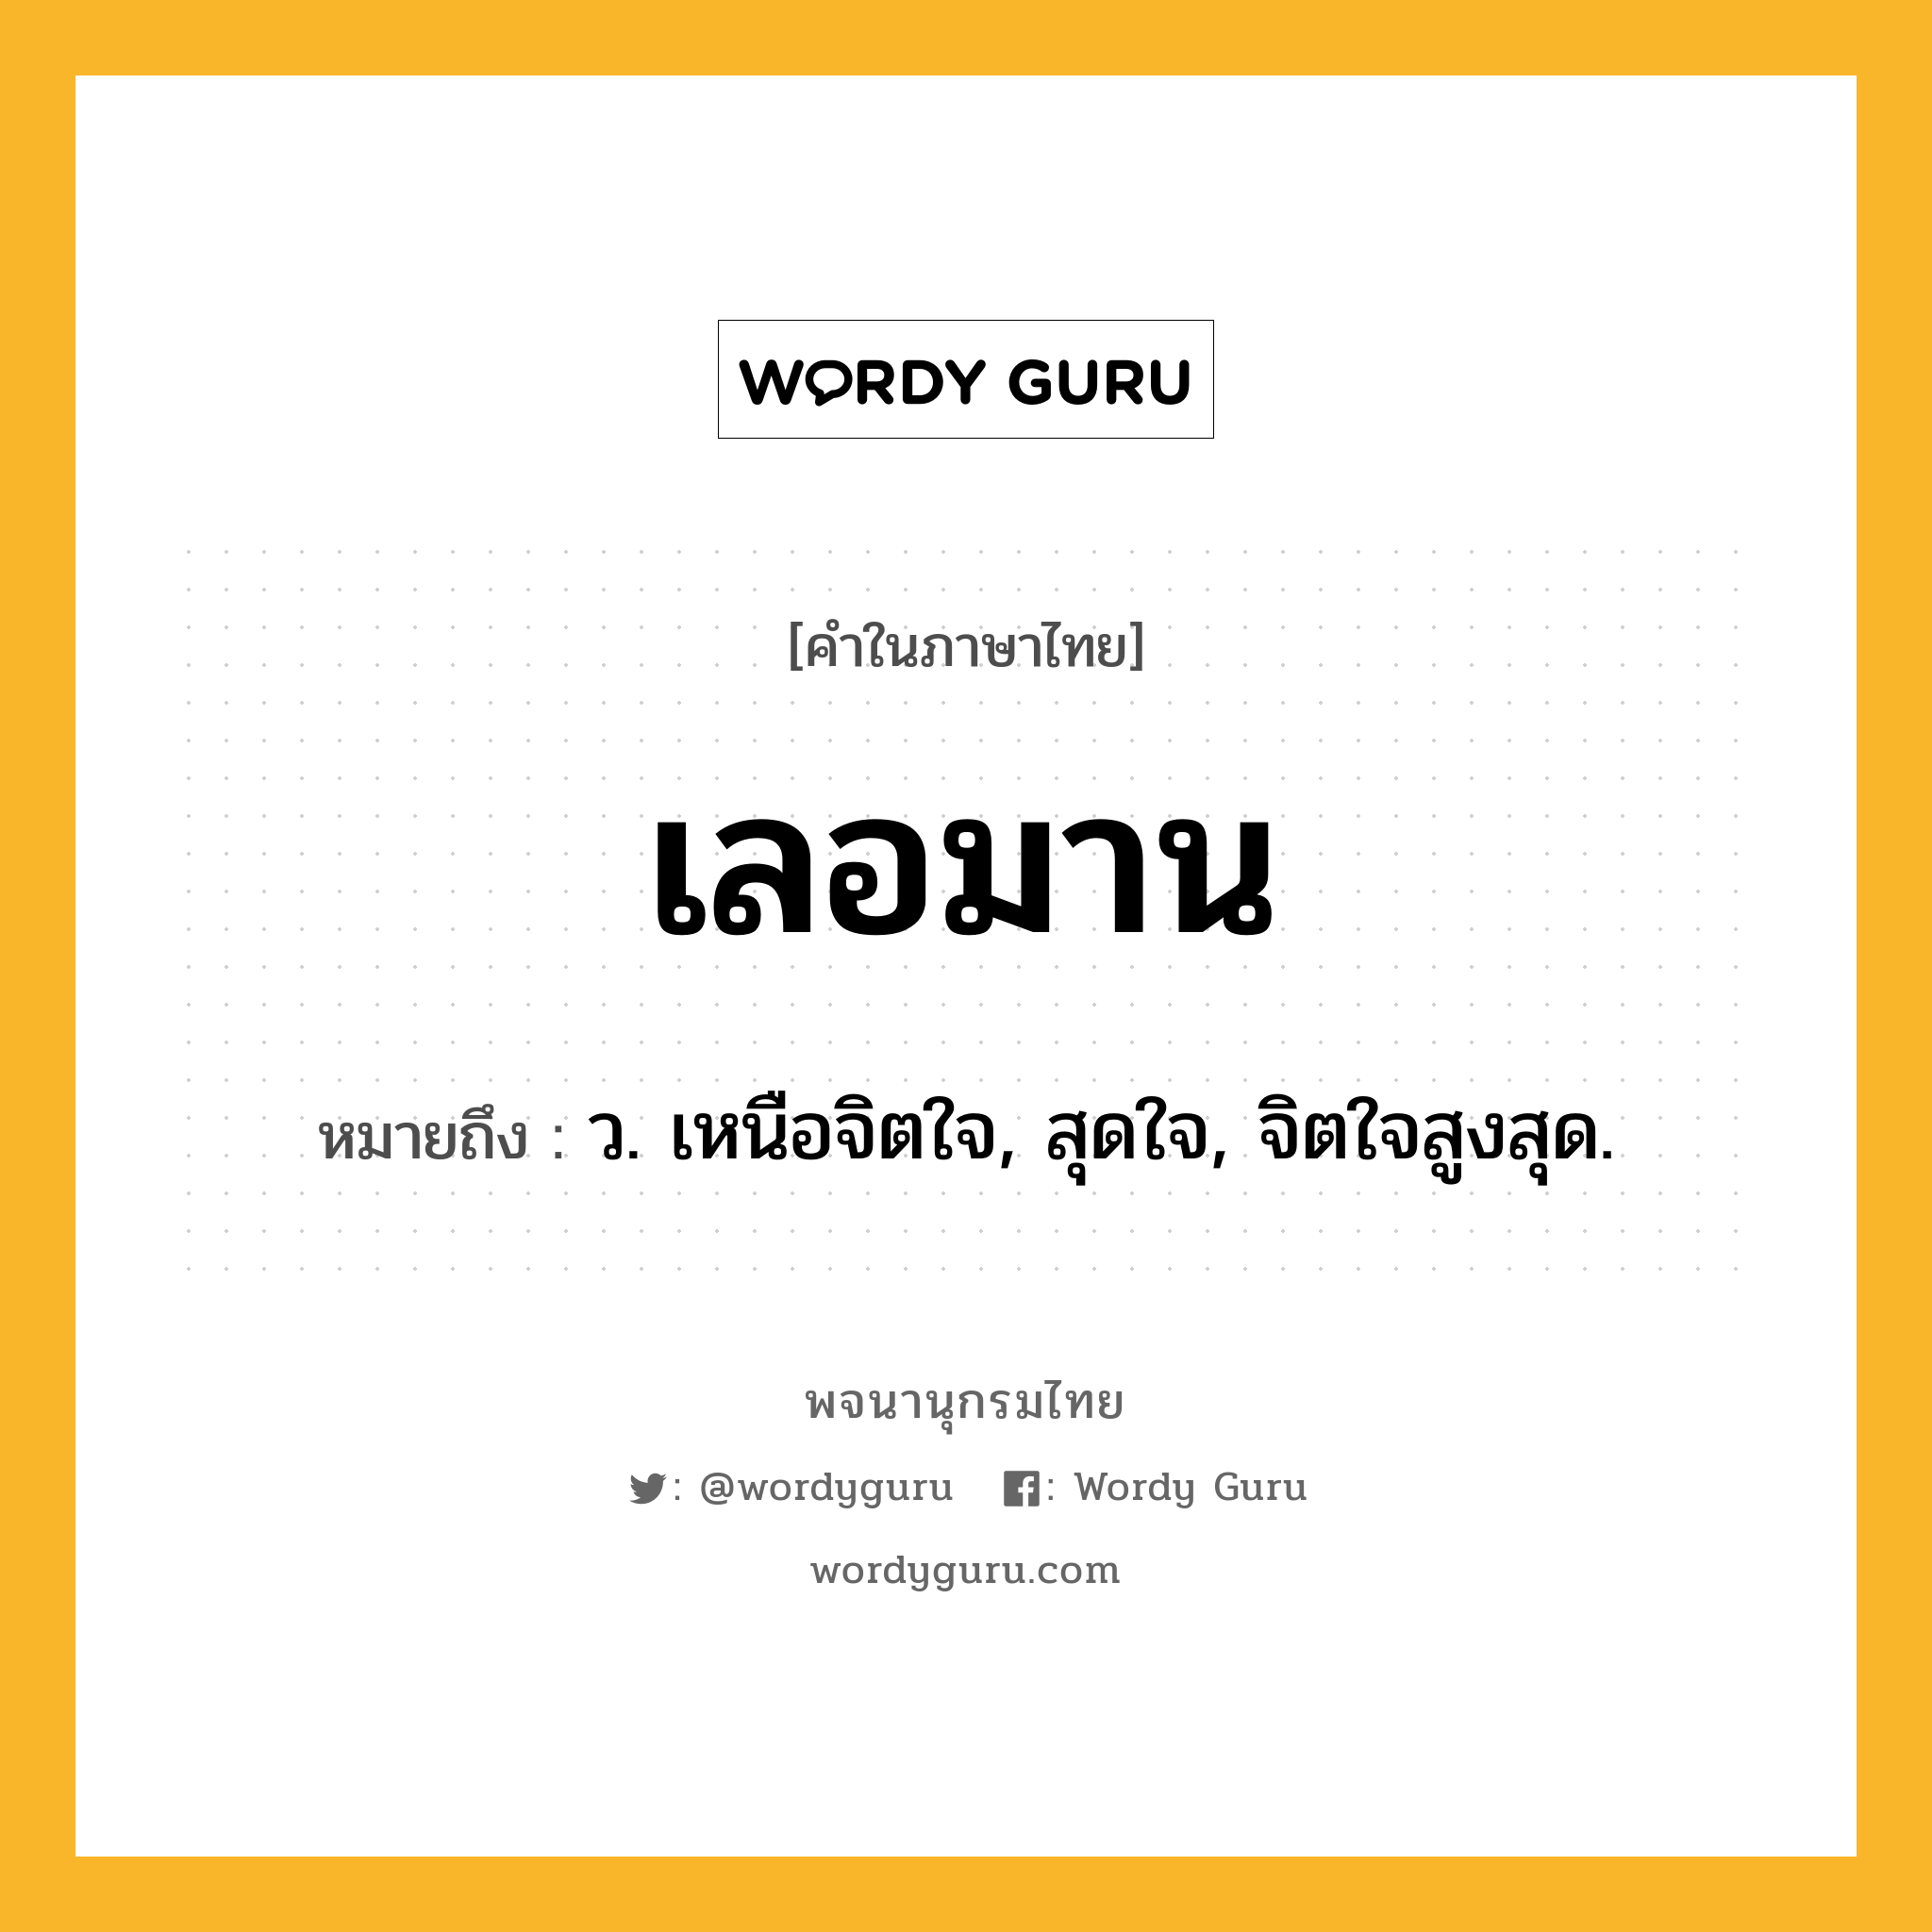 เลอมาน หมายถึงอะไร?, คำในภาษาไทย เลอมาน หมายถึง ว. เหนือจิตใจ, สุดใจ, จิตใจสูงสุด.